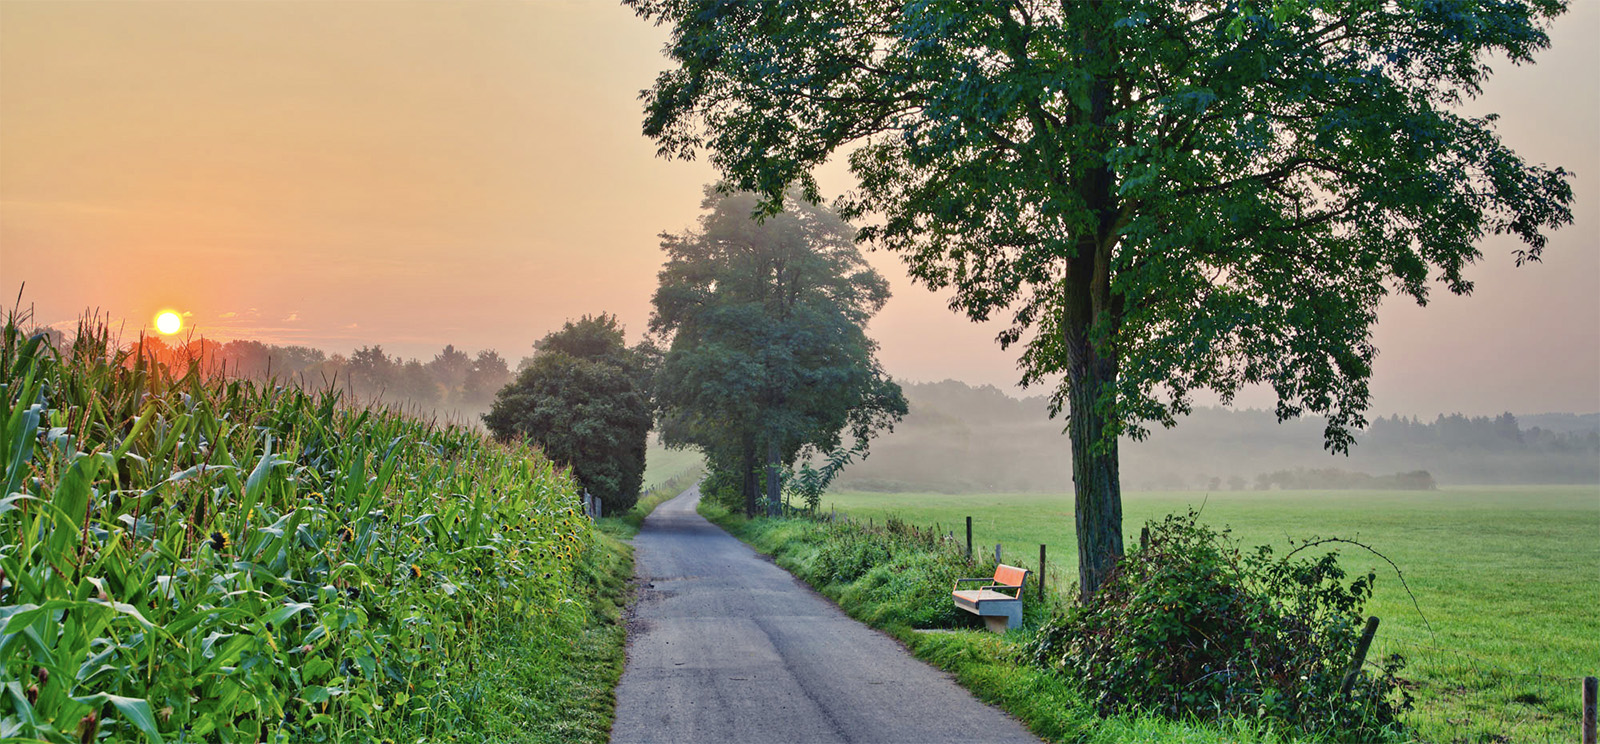 Feldweg beim Sonnenuntergang. Links ein Maisfeld, rechts eine Bank mit Baum und leerer Weide.